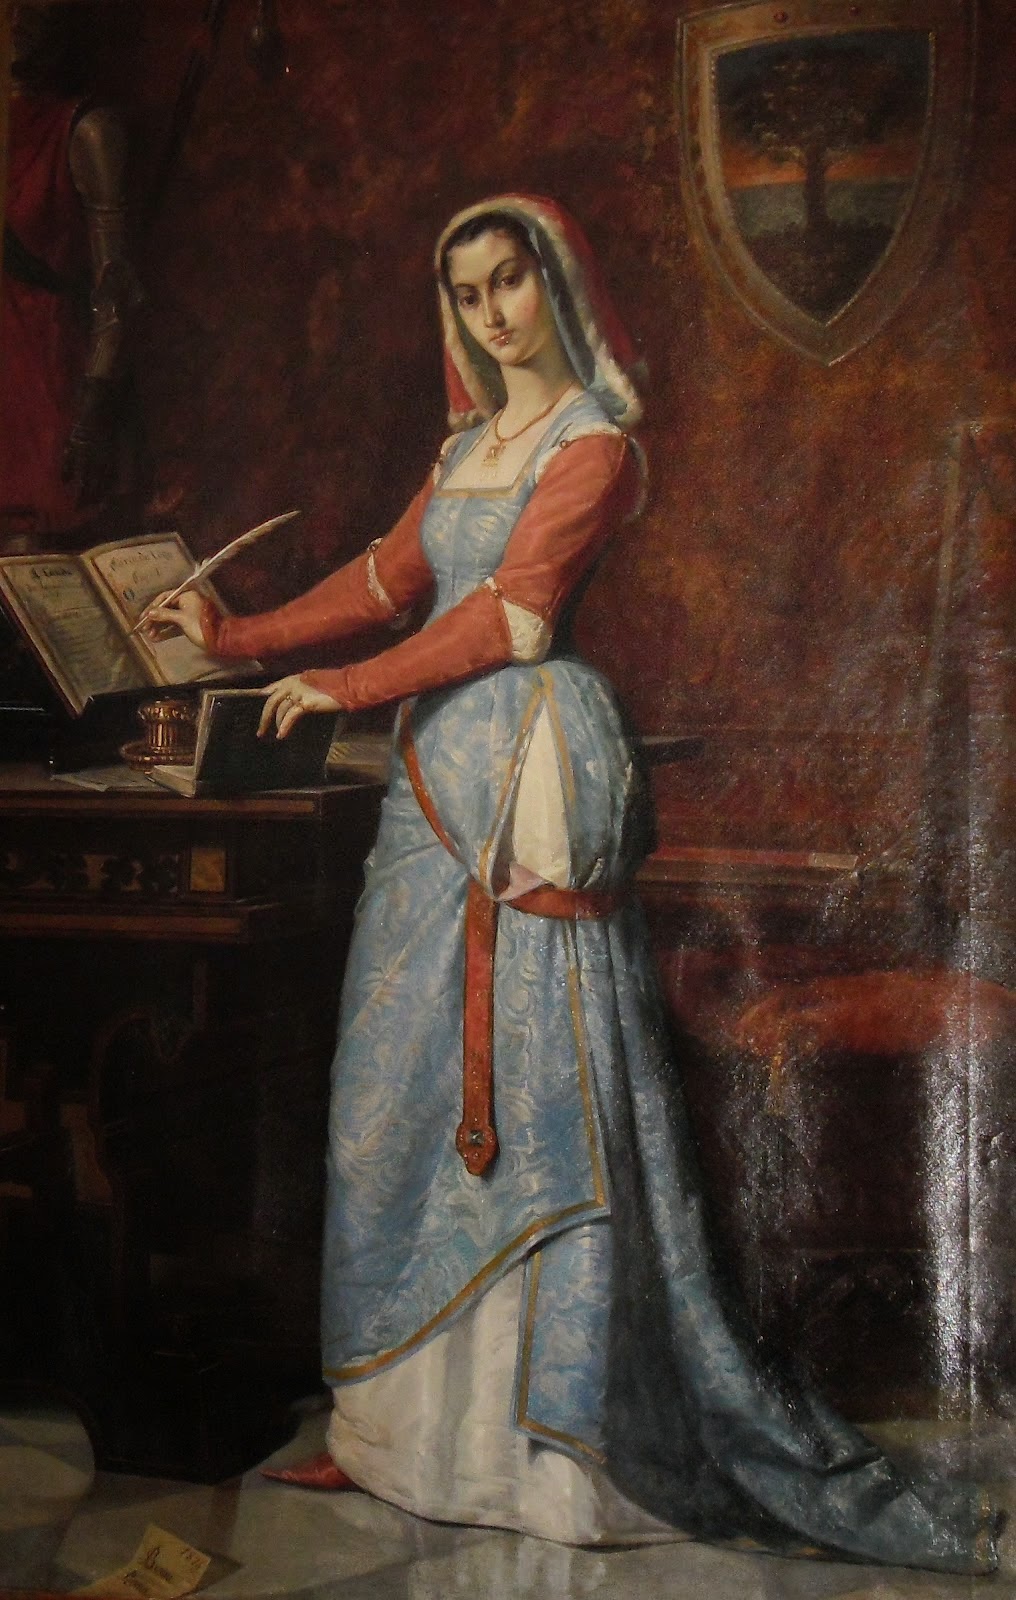 Ritratto di fantasia di Eleonora d'Arborea, opera di Antonio Benini, diciannovesimo secolo.